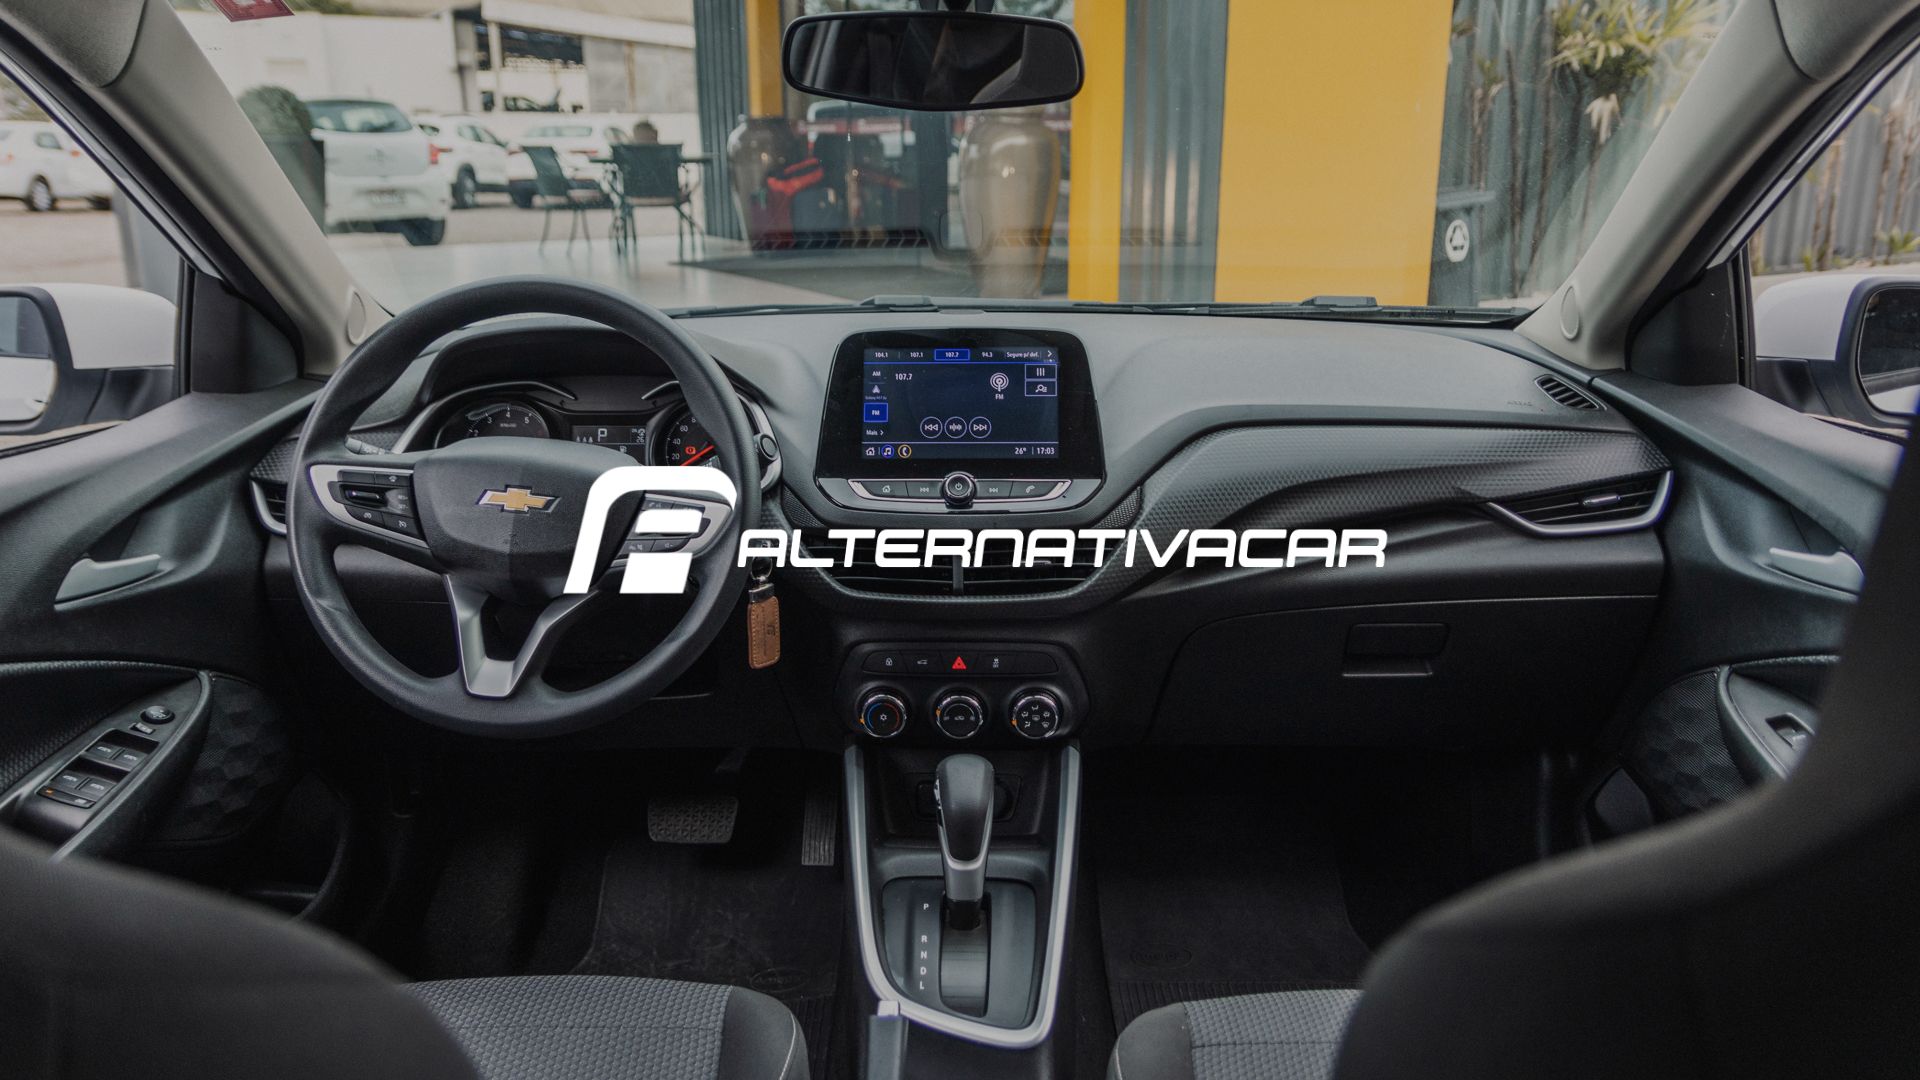 Alternativa Car, a sua melhor opção quando o assunto é locação de carros em Porto Alegre!